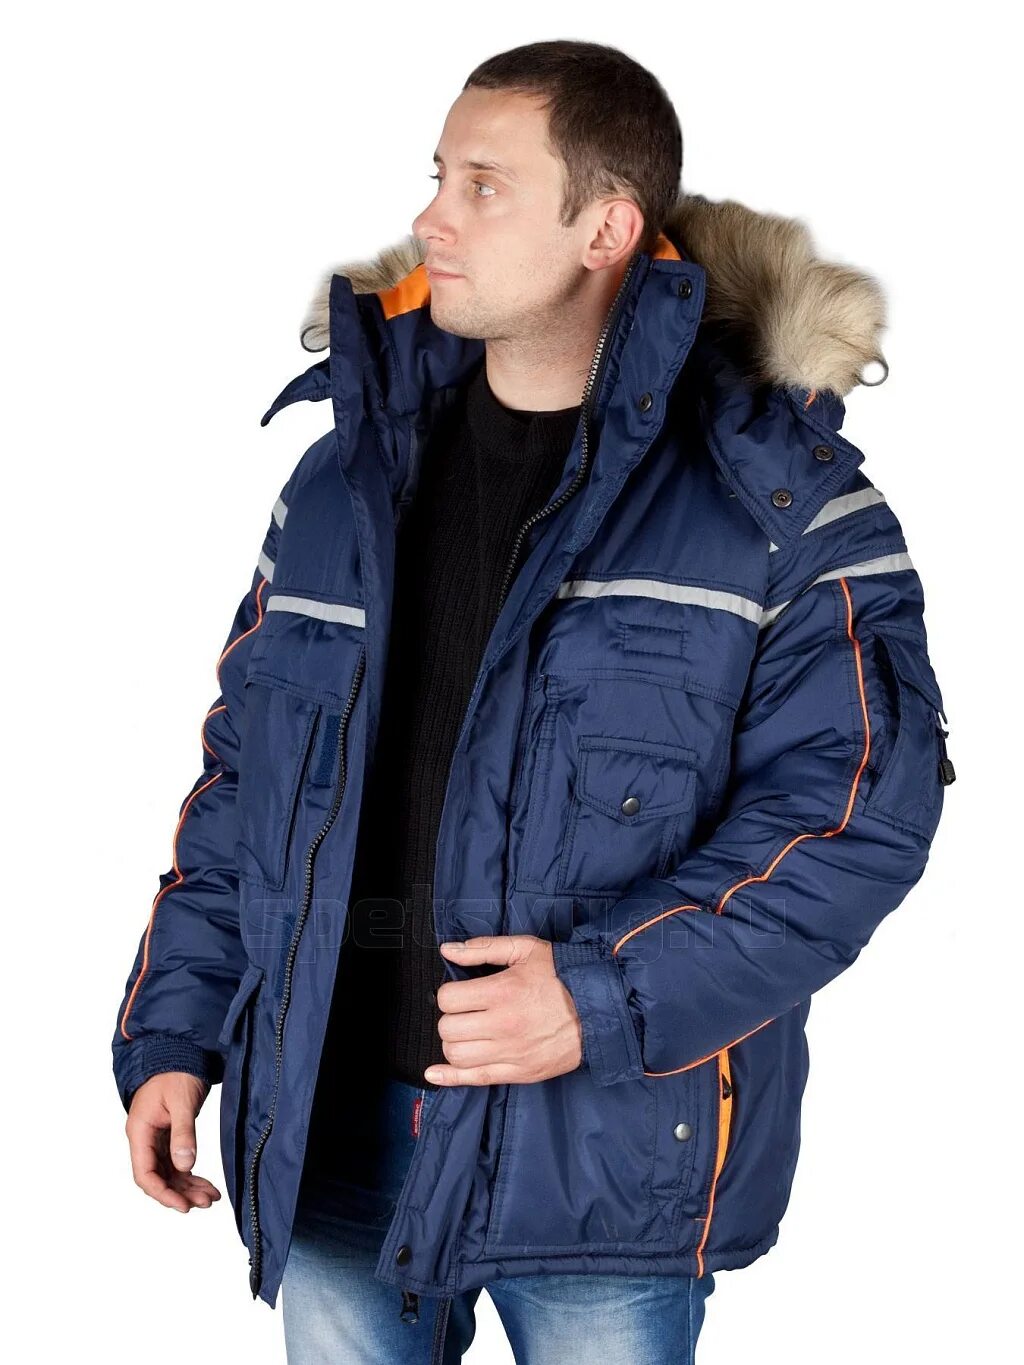 Куртка мужская зимняя Аляска Техноавиа. Модель 2.183 куртка Аляска. Куртка Техноавиа Аляска Люкс. Куртка Аляска Люкс. Куртка россия зимняя мужская